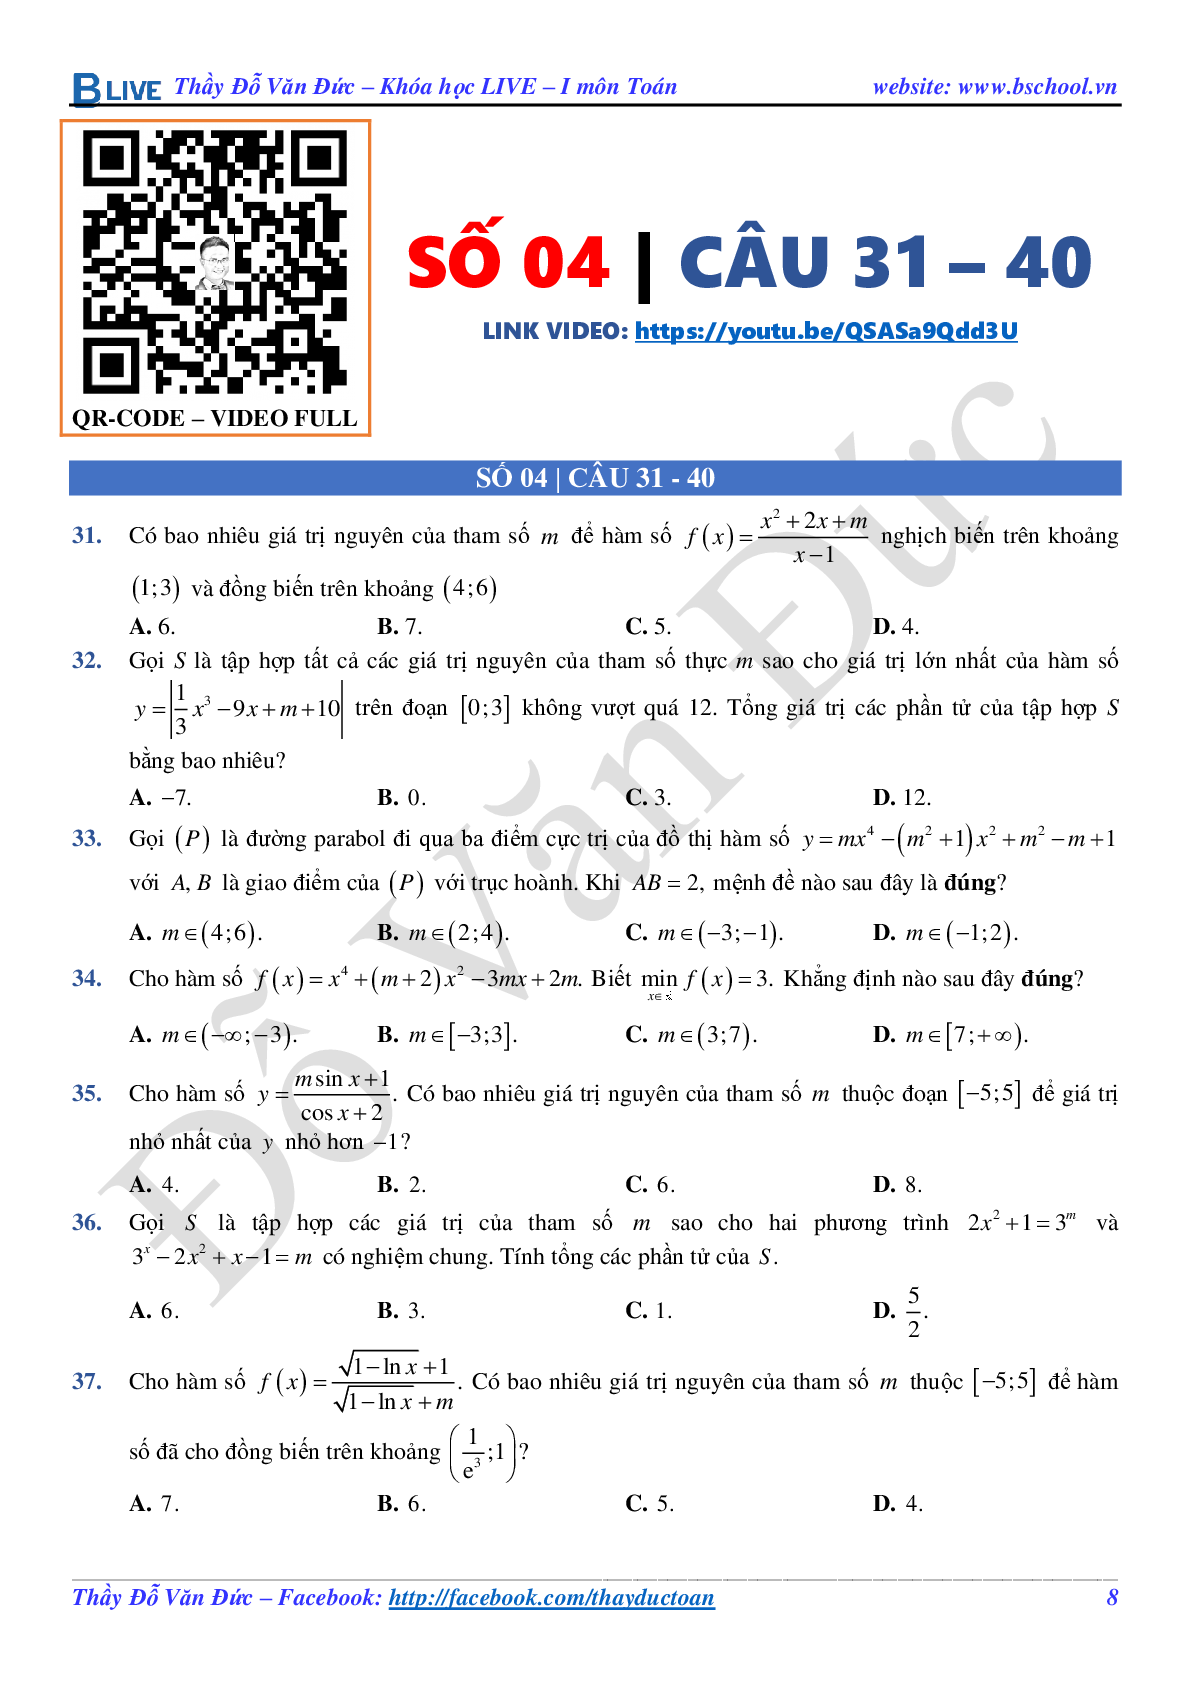 Bí quyết giải các câu vận dụng cao trong đề thi THPT QG Môn Toán Lớp 12 (trang 8)